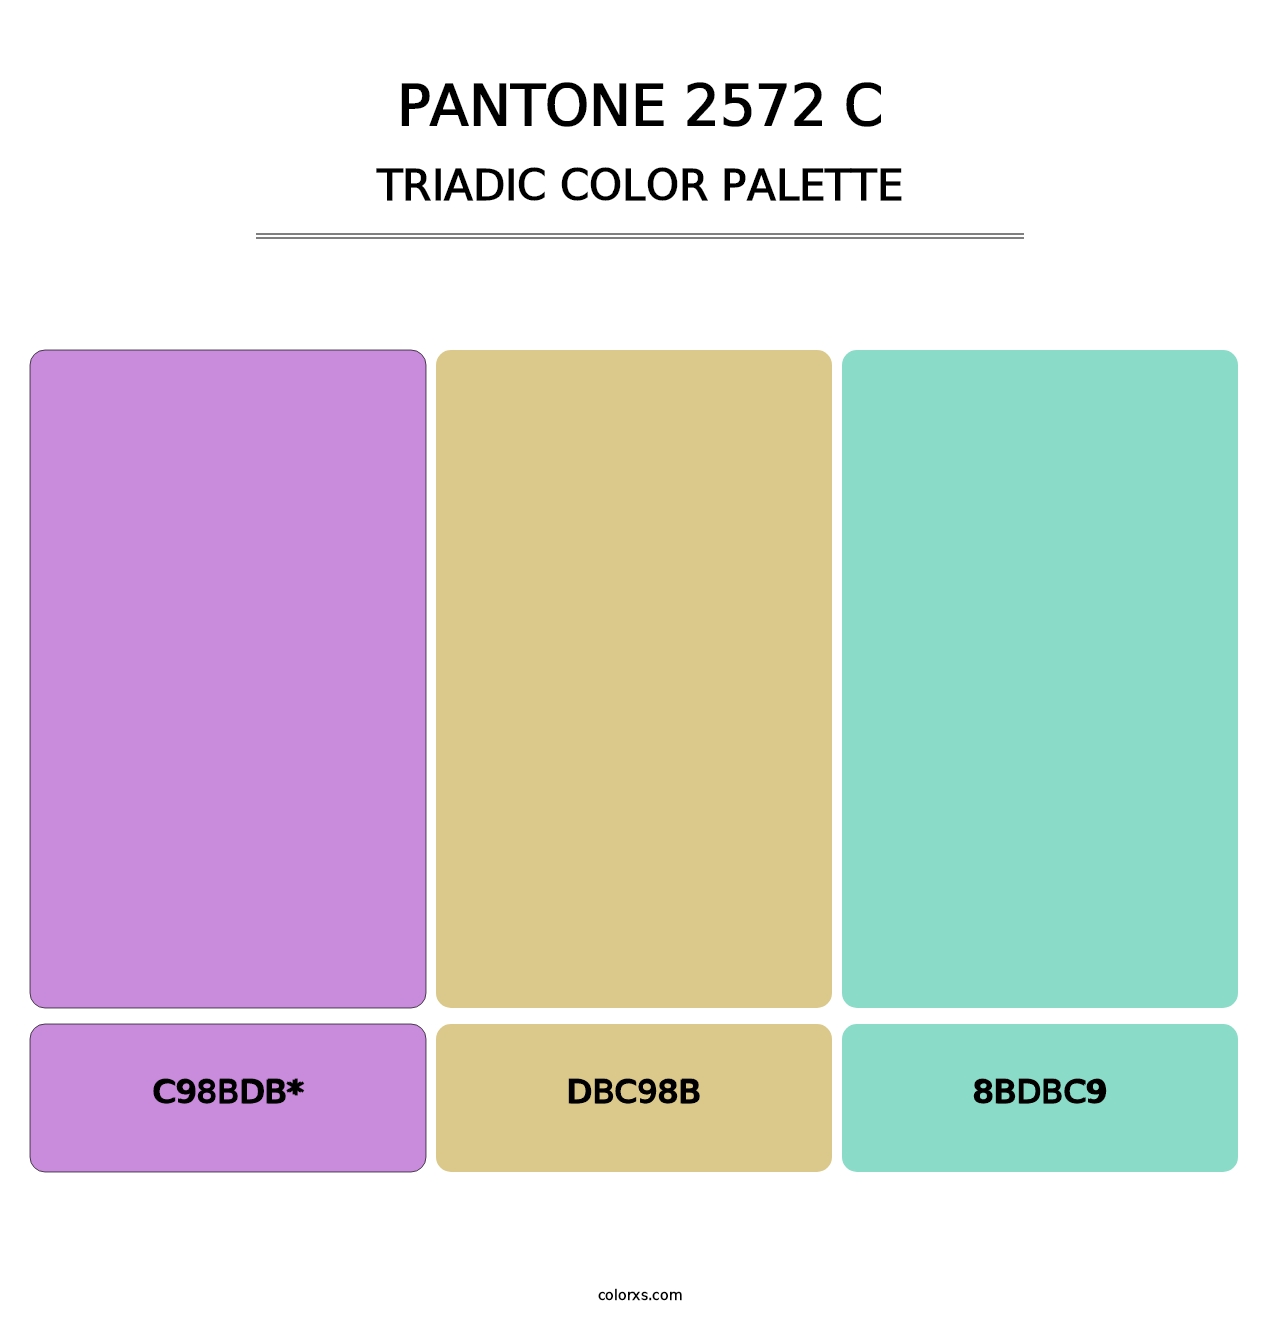 PANTONE 2572 C - Triadic Color Palette